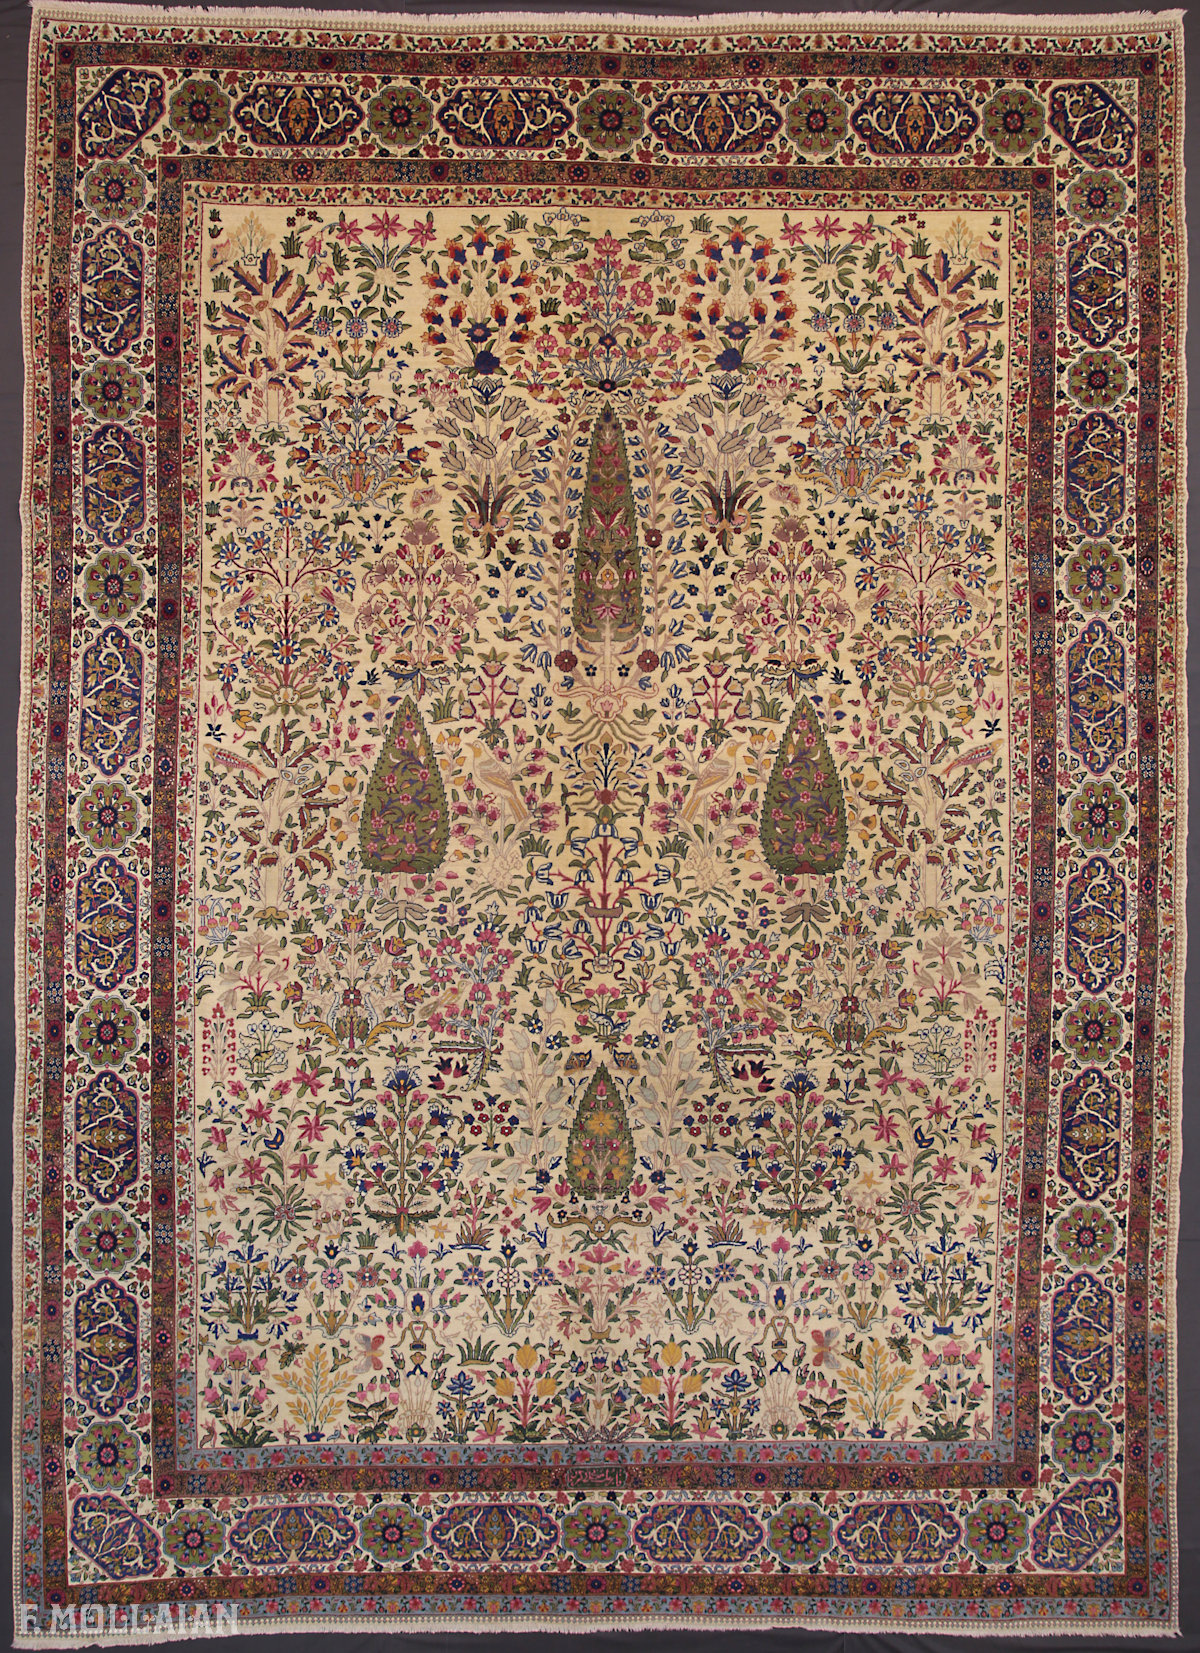 Tapis Persan Antique Kerman « MILANI » n°:56130674